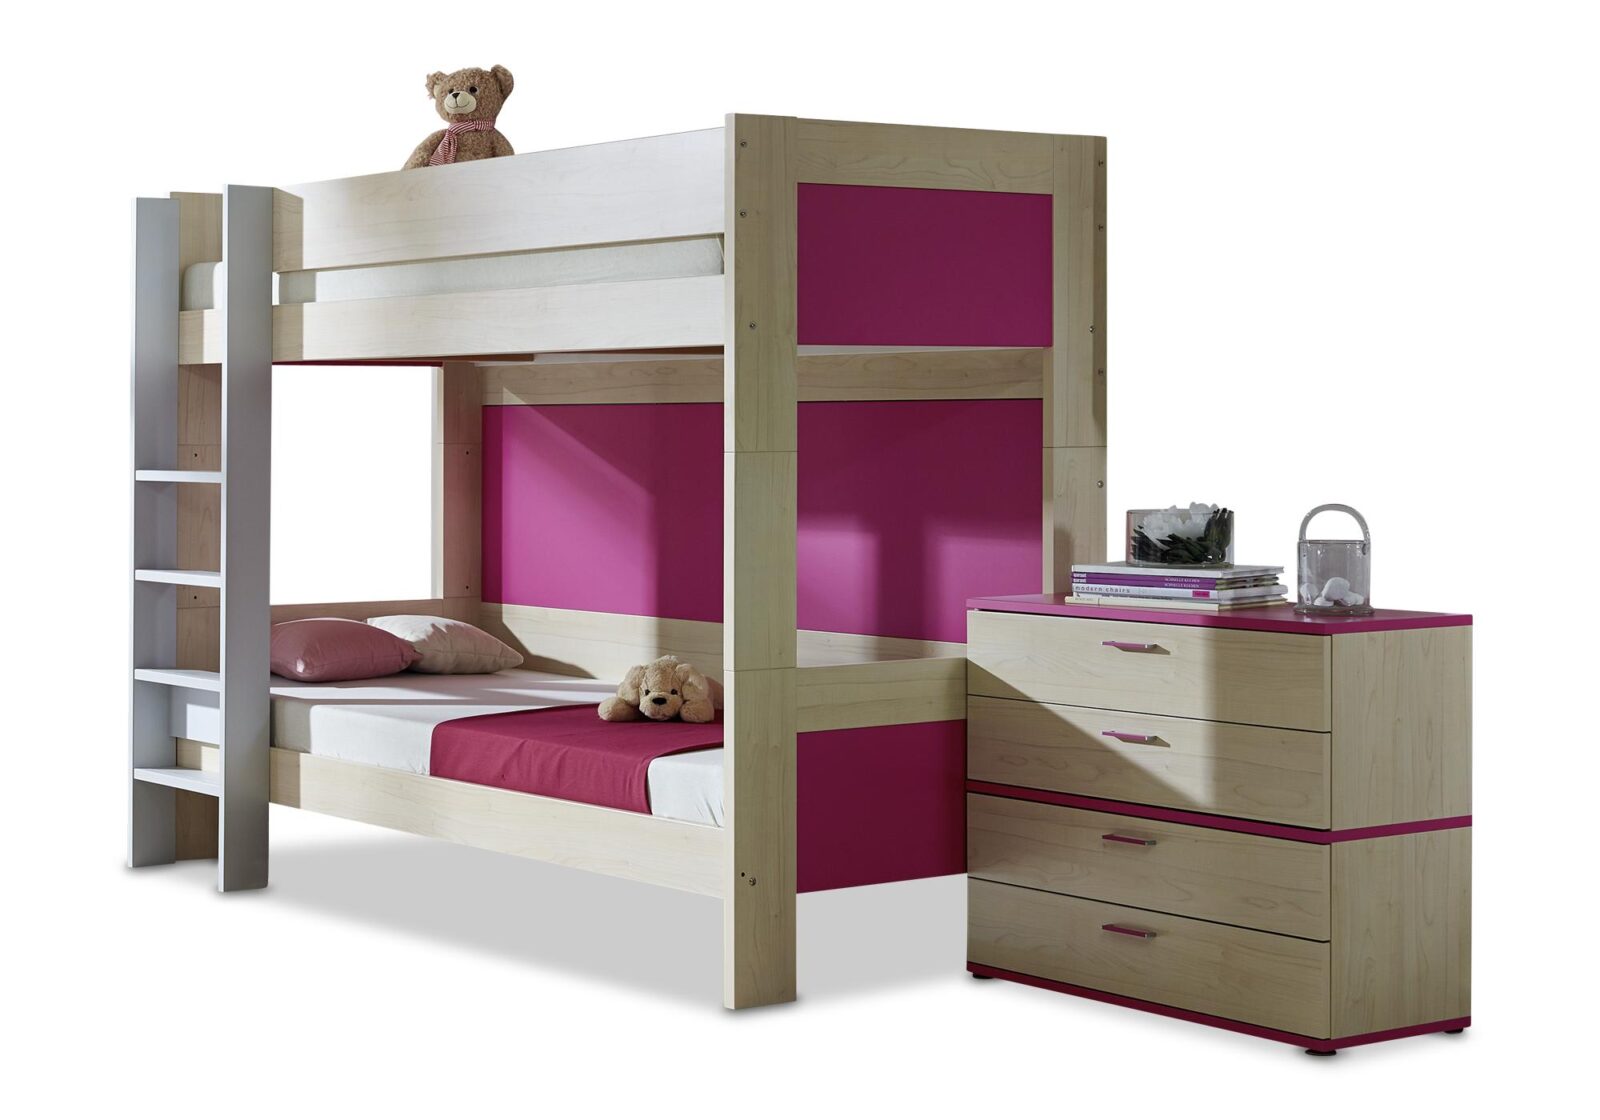 Studio Color Fun – immer schön kombiniert. Decor Ahorn  pink. 2 Teile. Erhältlich bei Möbel Gallati.